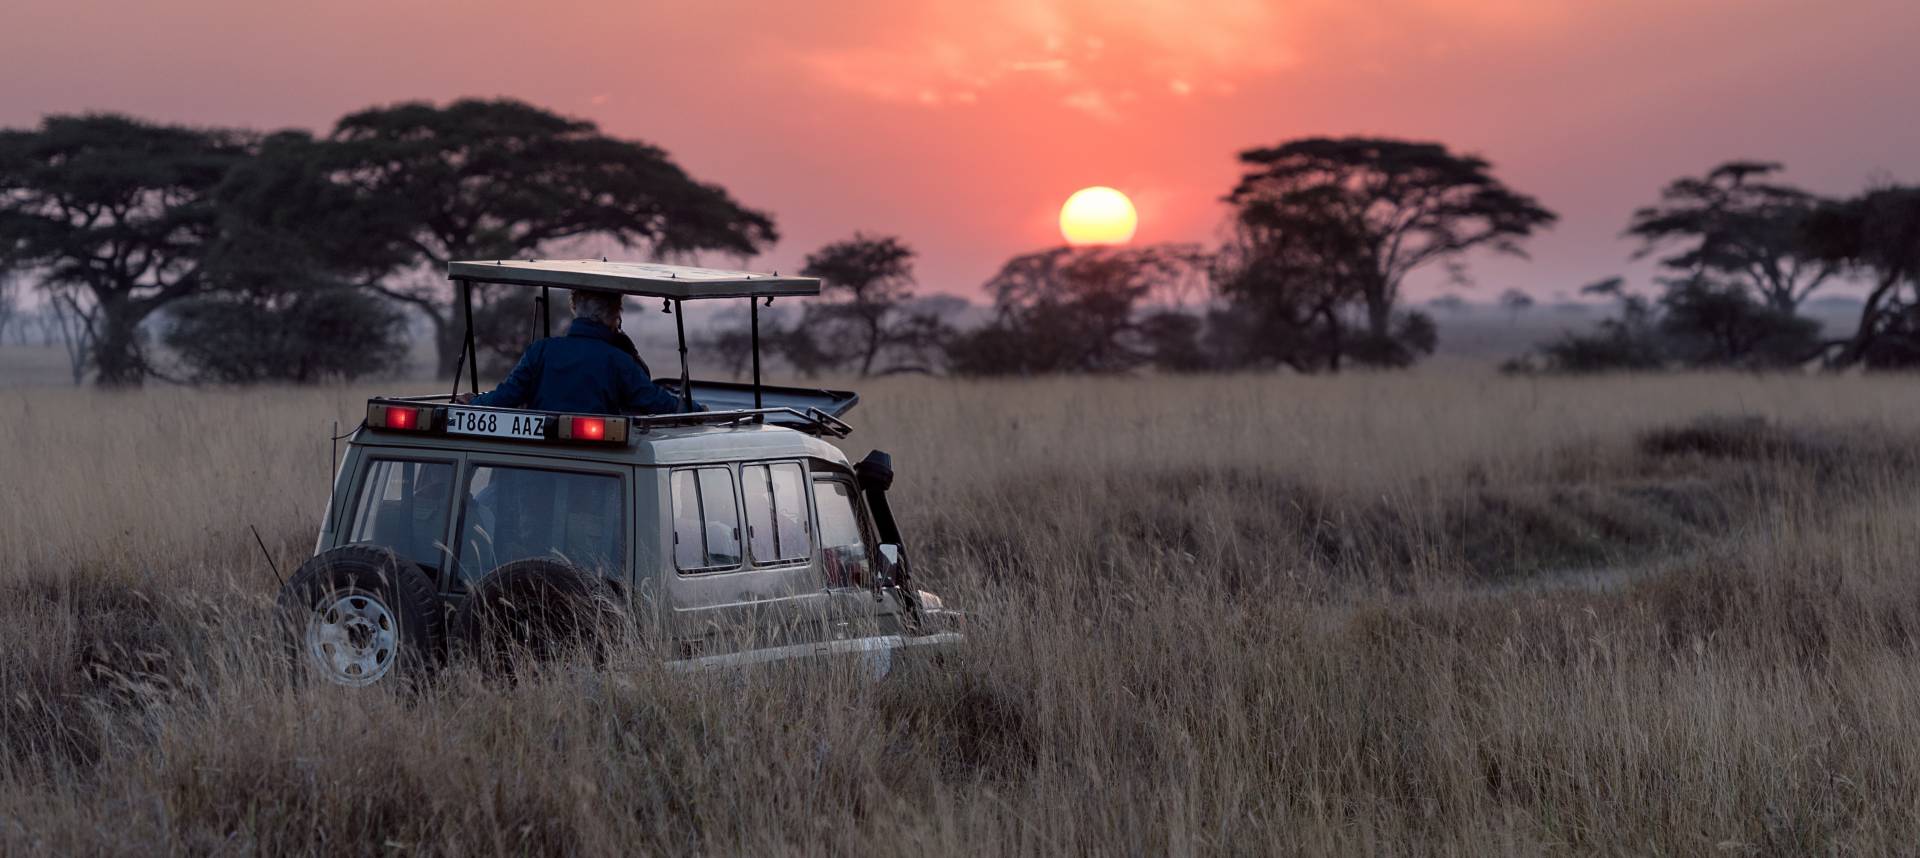 tanzania safari africa